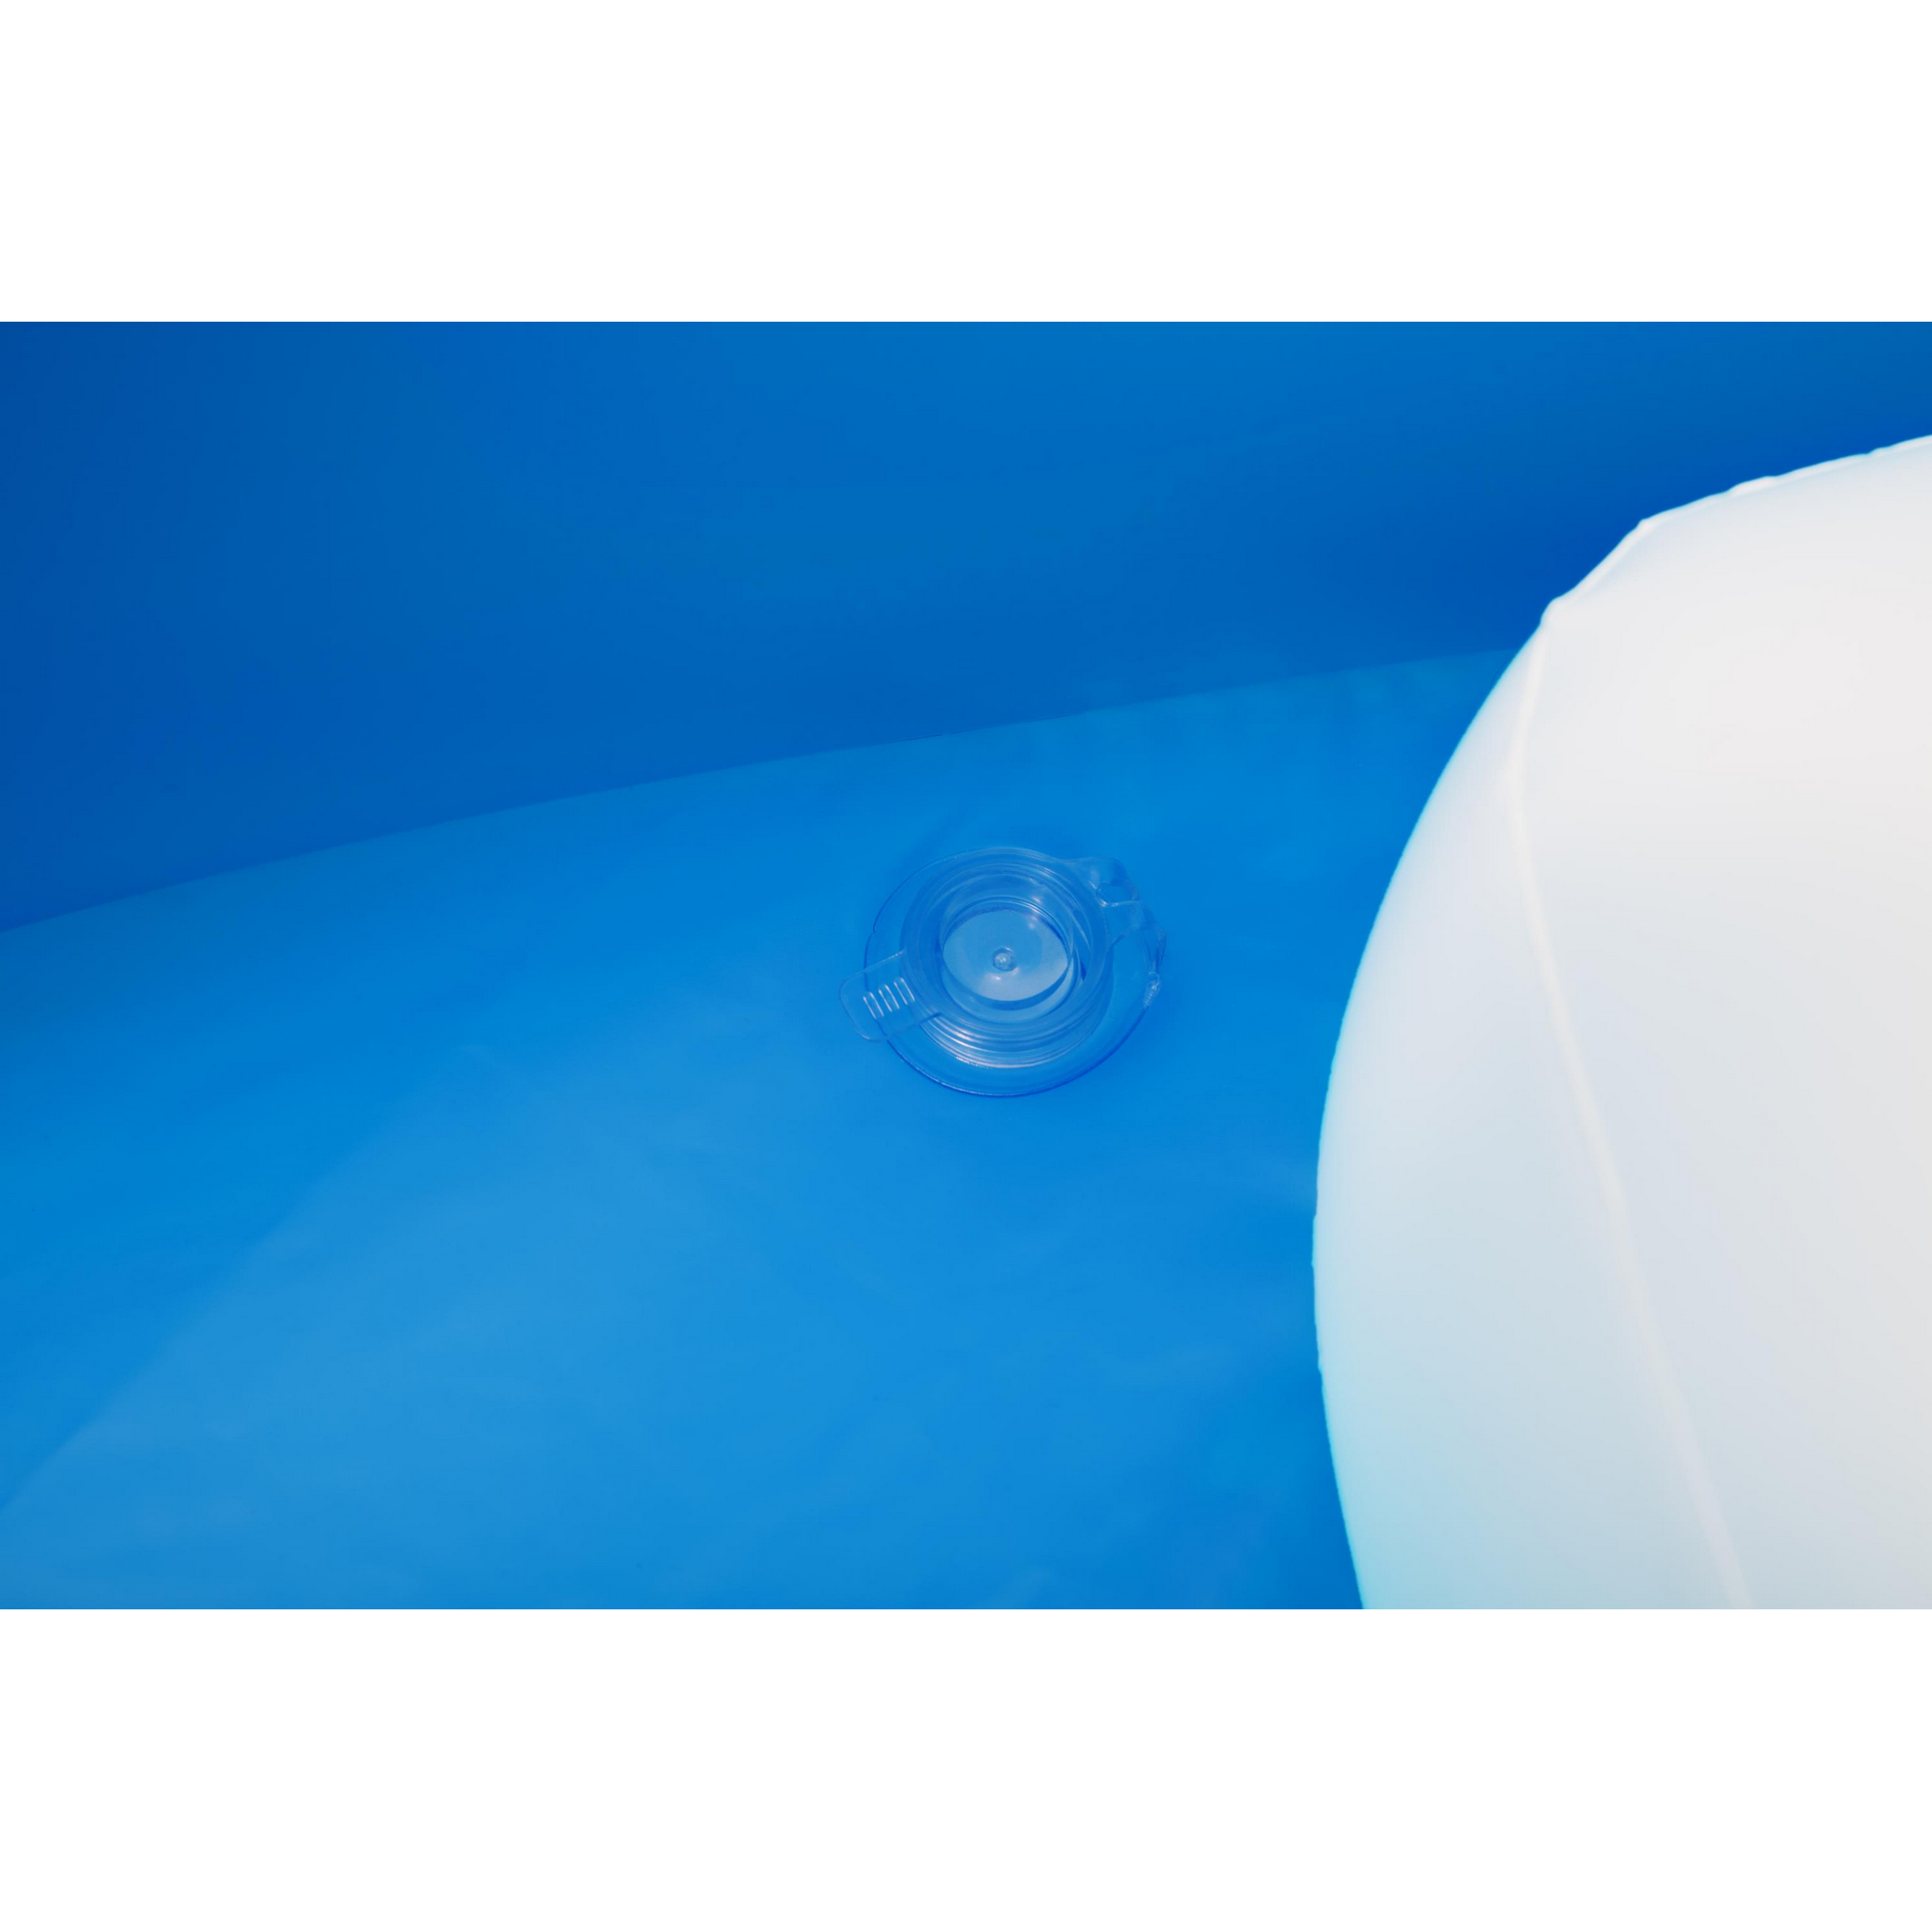 Planschbecken mit UV Careful™ Sonnenschutzdach 'Summer Days' blau Ø 241 x 140 cm 850 l + product picture